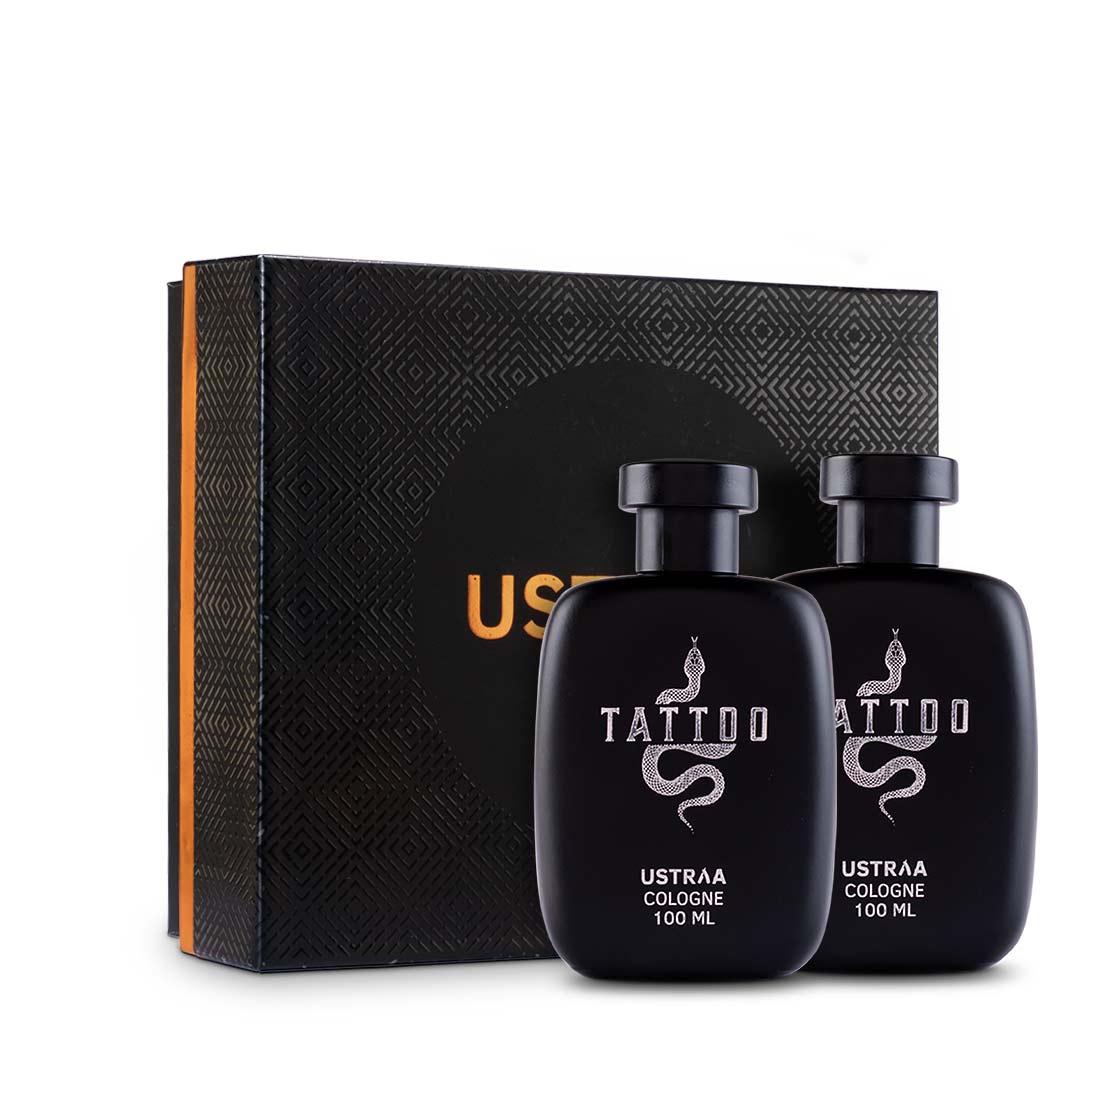 Ustraa Fragrance Gift Box - Tattoo Cologne - Perfume for Men 100ml - Set of 2